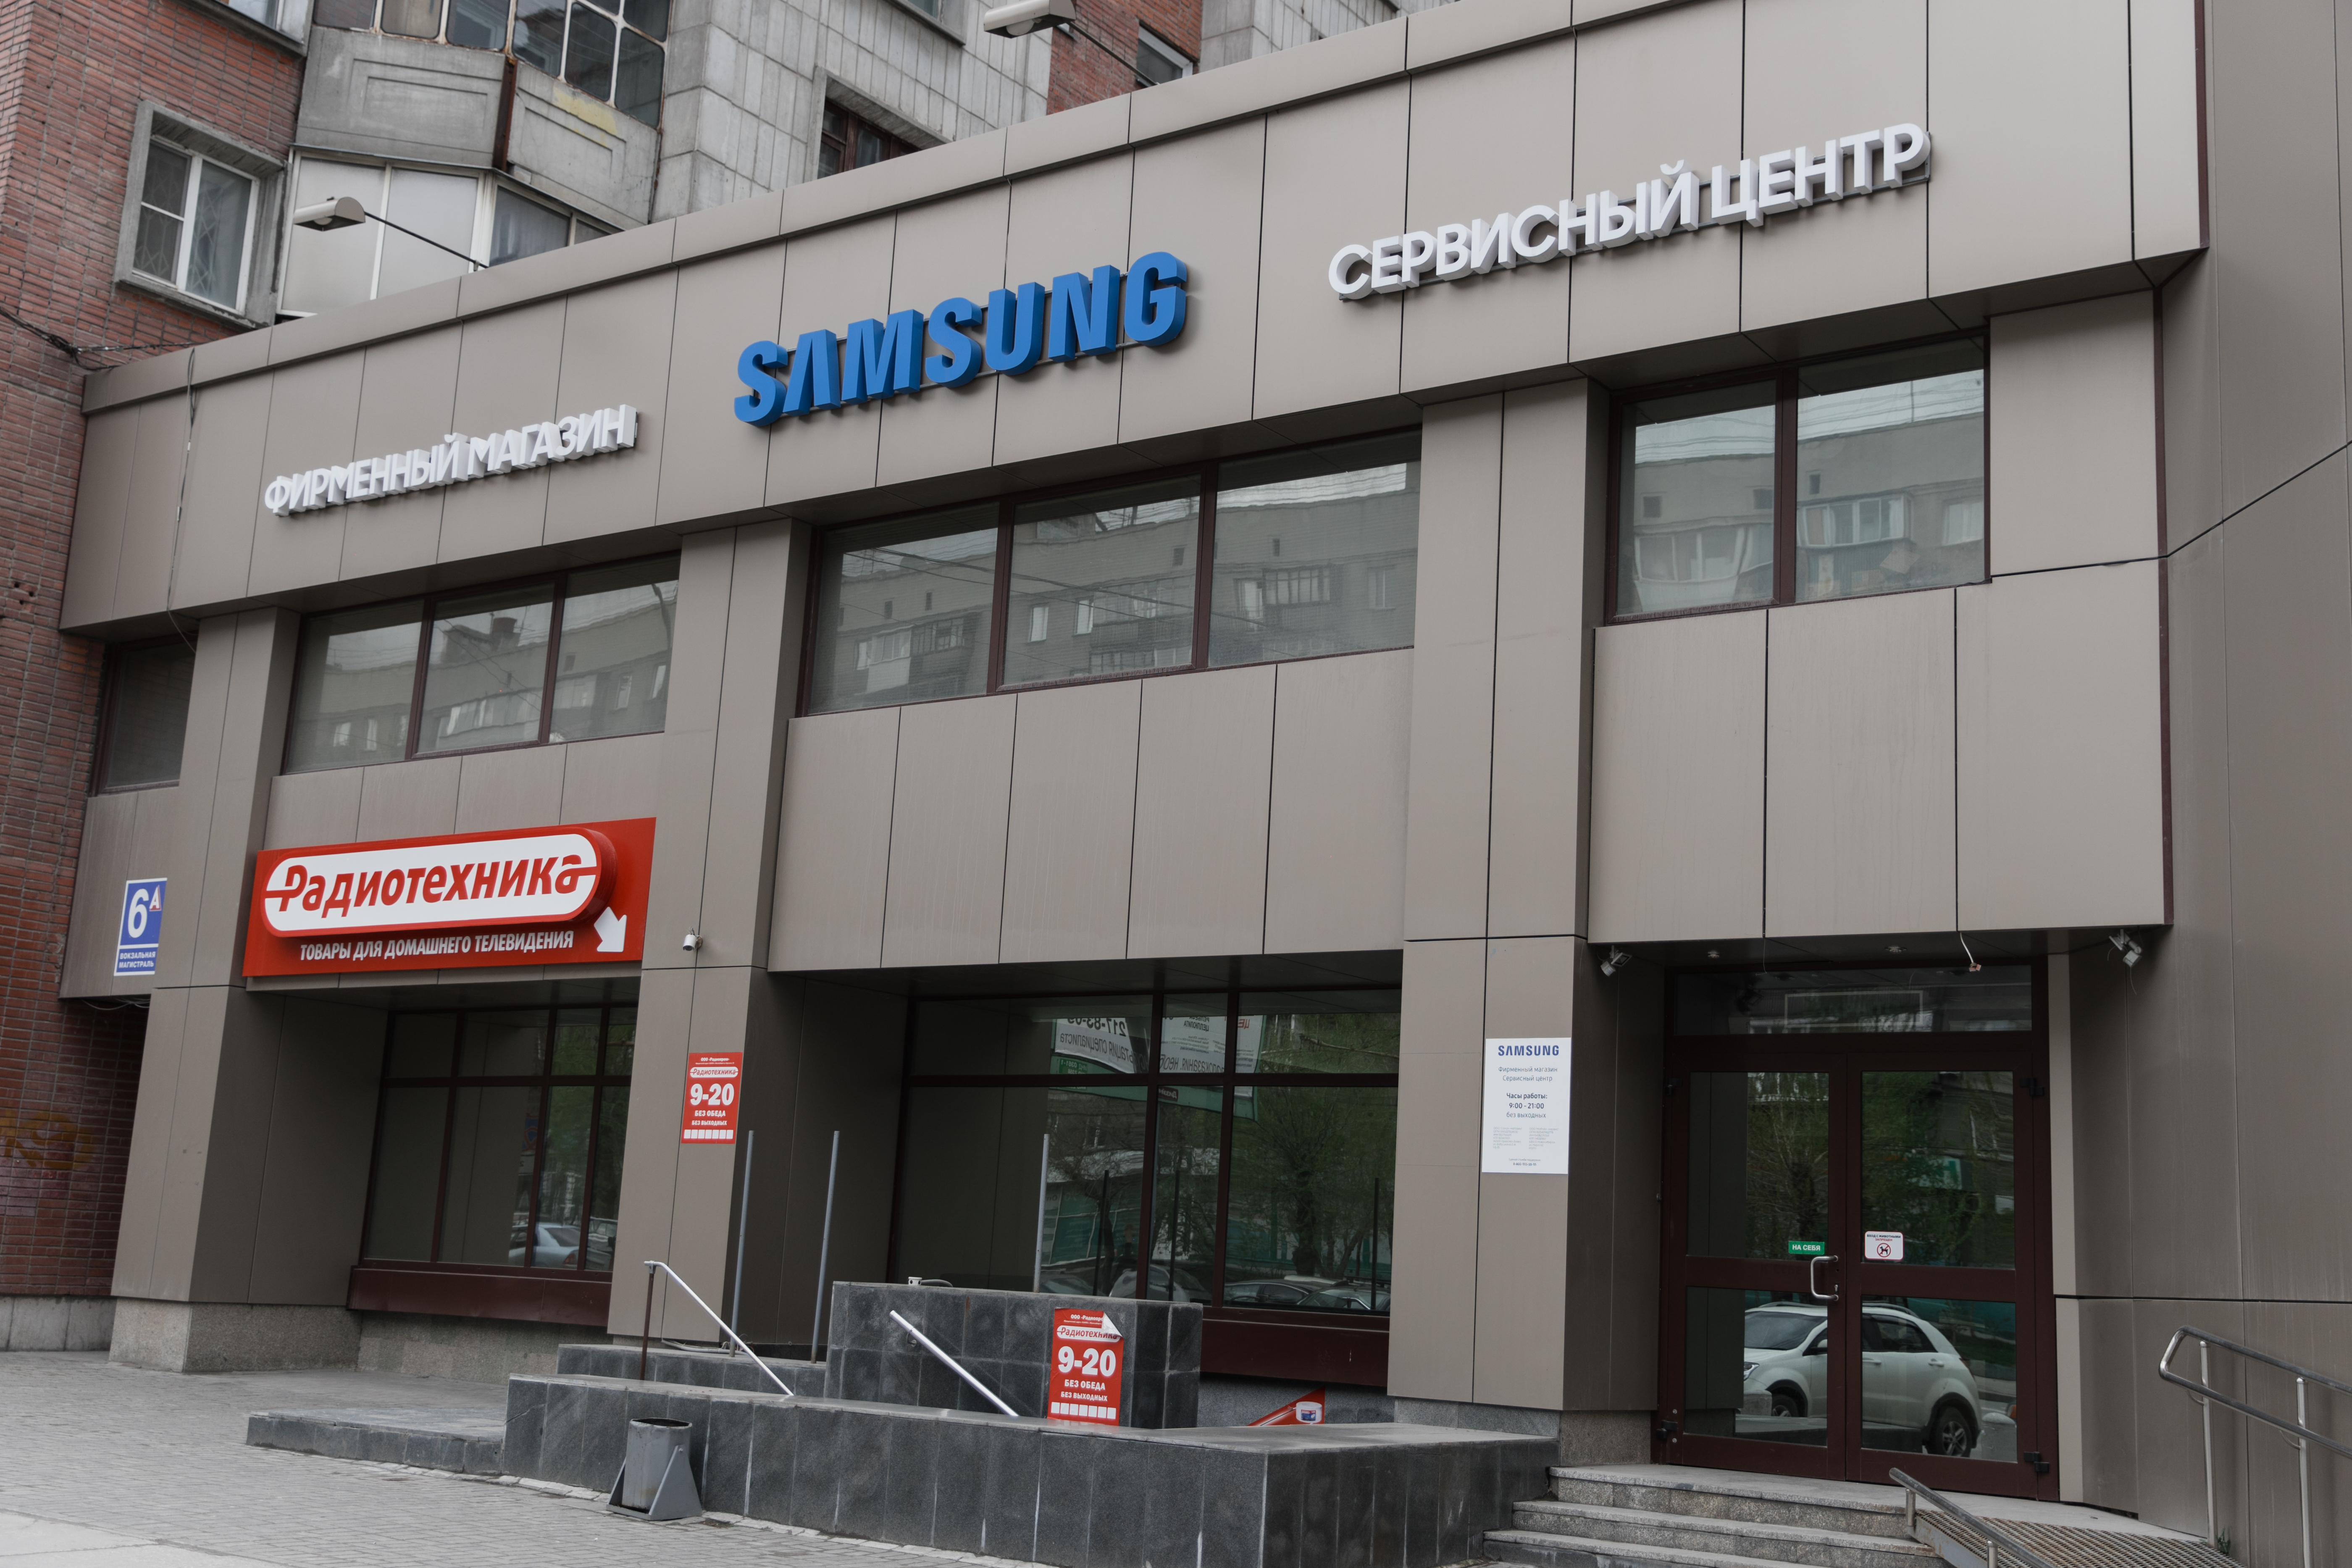 Самсунг гарантийный сервисный центр. Сервисный центр. Сервисный центр самсунг в Новосибирске. Samsung сервис центр. СЦ Samsung.